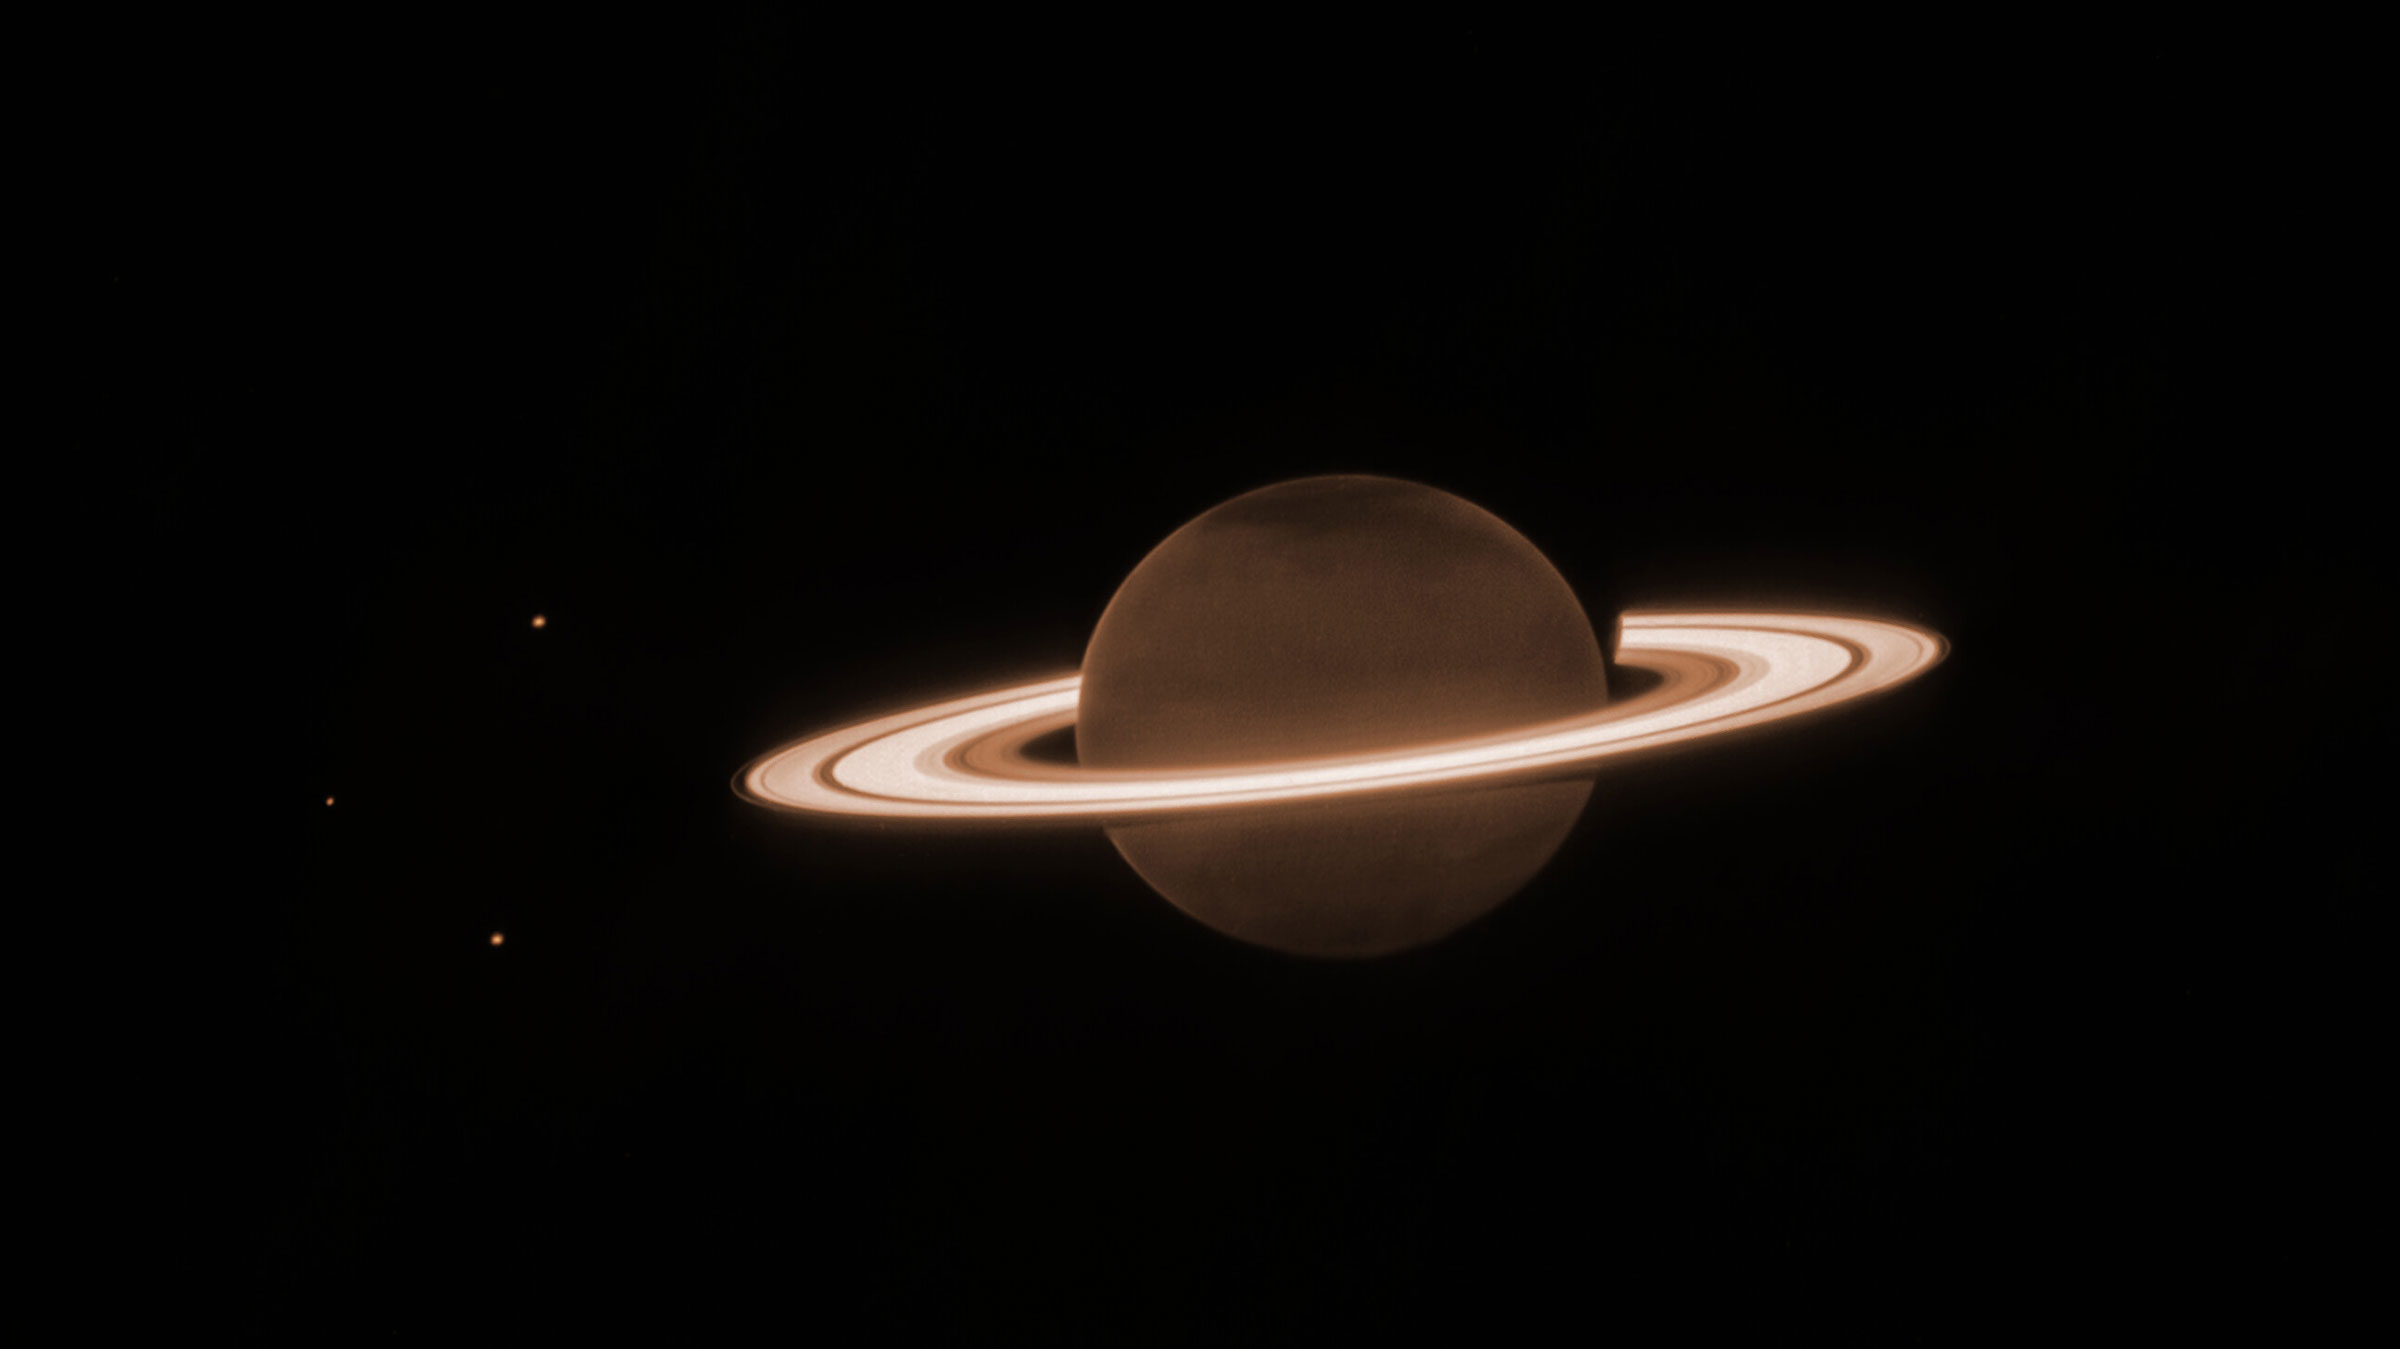 O fundo é quase todo escuro.  No centro há um círculo marrom-alaranjado escuro, cercado por vários anéis horizontais esbranquiçados, grossos e brilhantes.  Este é Saturno e seus anéis.  Existem três pequenos pontos na imagem – um no canto superior esquerdo do planeta, um diretamente à esquerda do planeta e no canto inferior esquerdo do planeta.  Estas são três luas de Saturno: Dione, Encélado e Tétis, respectivamente.  Há uma tonalidade ligeiramente mais escura nos pólos norte e sul do planeta.  Os anéis que circundam Saturno são em sua maioria largos, com algumas lacunas estreitas e singulares entre os anéis mais largos.  Há um anel mais interno e mais grosso e, próximo a ele, um anel mais brilhante e mais largo.  Viajando mais para fora, há uma pequena lacuna escura antes de outro anel mais espesso.  No anel mais grosso, há uma faixa estreita e fraca.  Existe então um anel mais externo, mais fraco e mais fino.